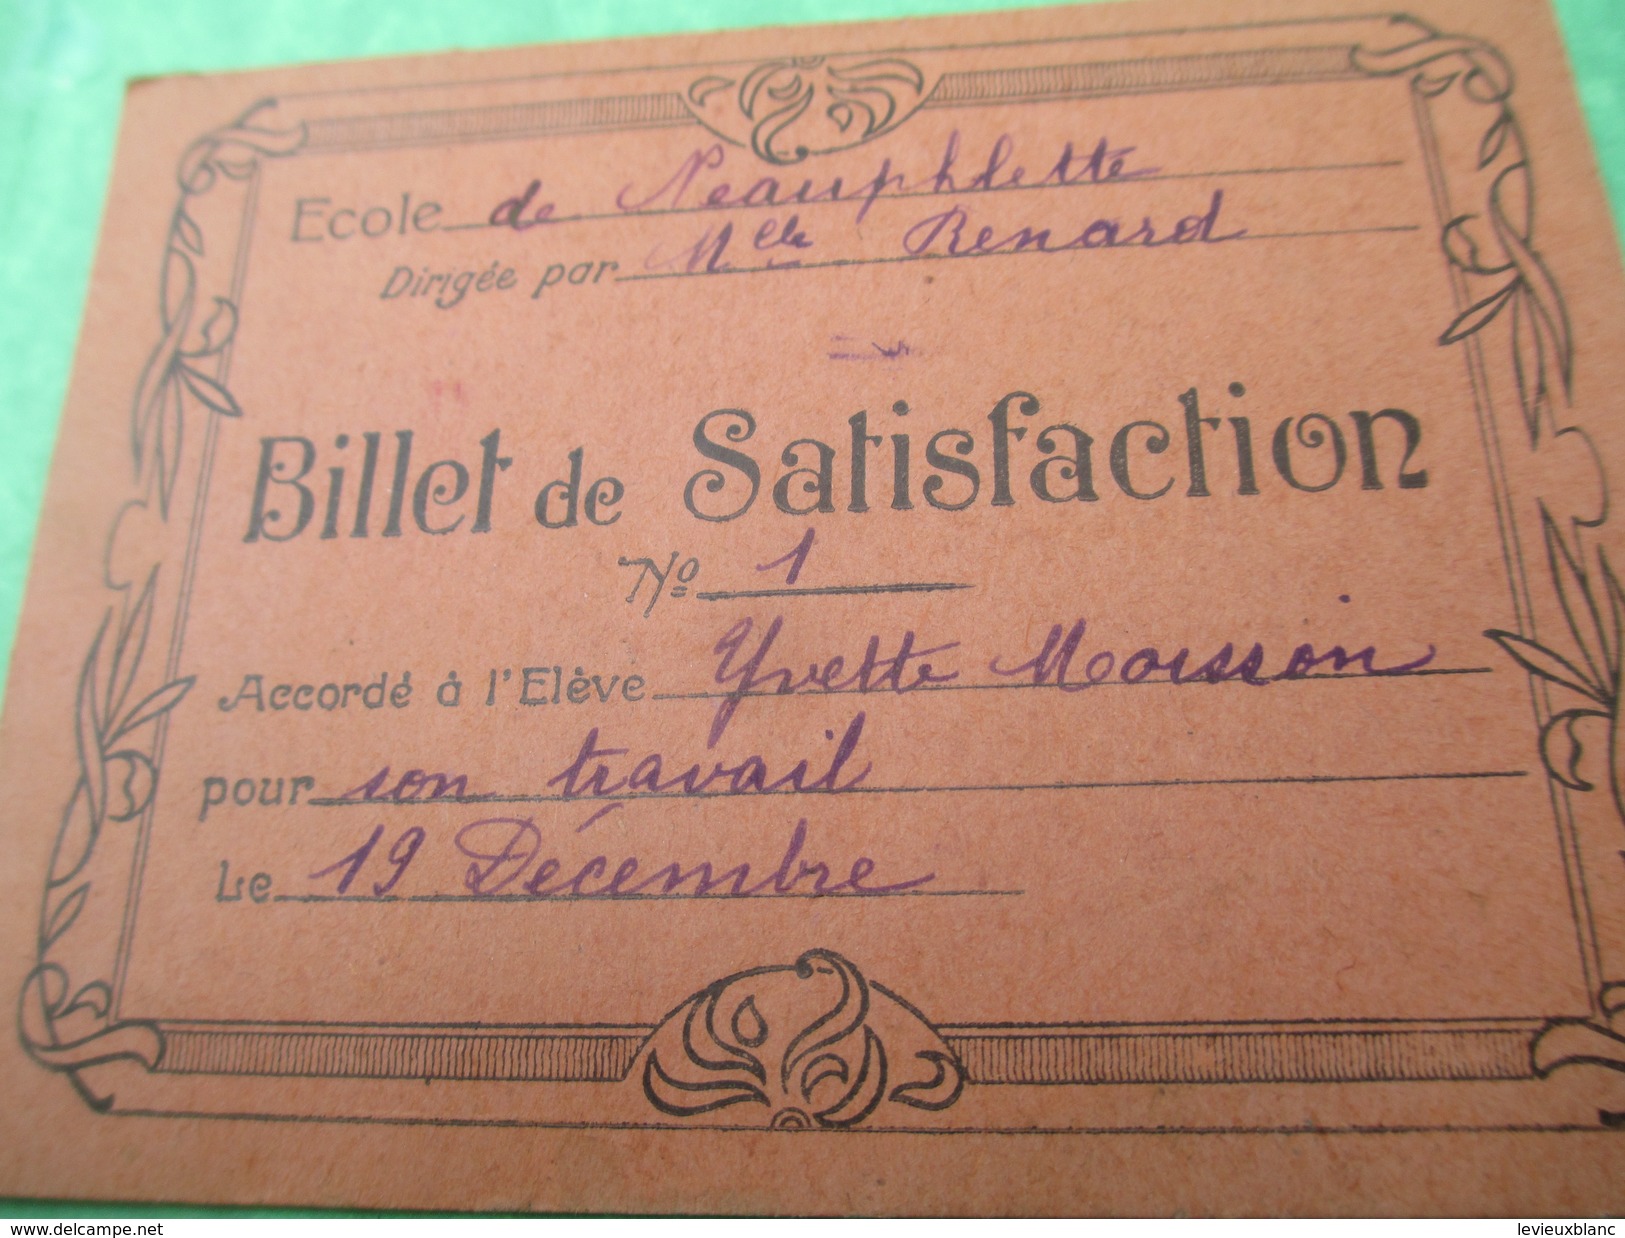 Billets De Satisfaction/Ecole De NEAUPHLETTE/S Et O/Directrice Melle Renard/Yvette Et Antoinette Moisson/1932     CAH156 - Diplomas Y Calificaciones Escolares